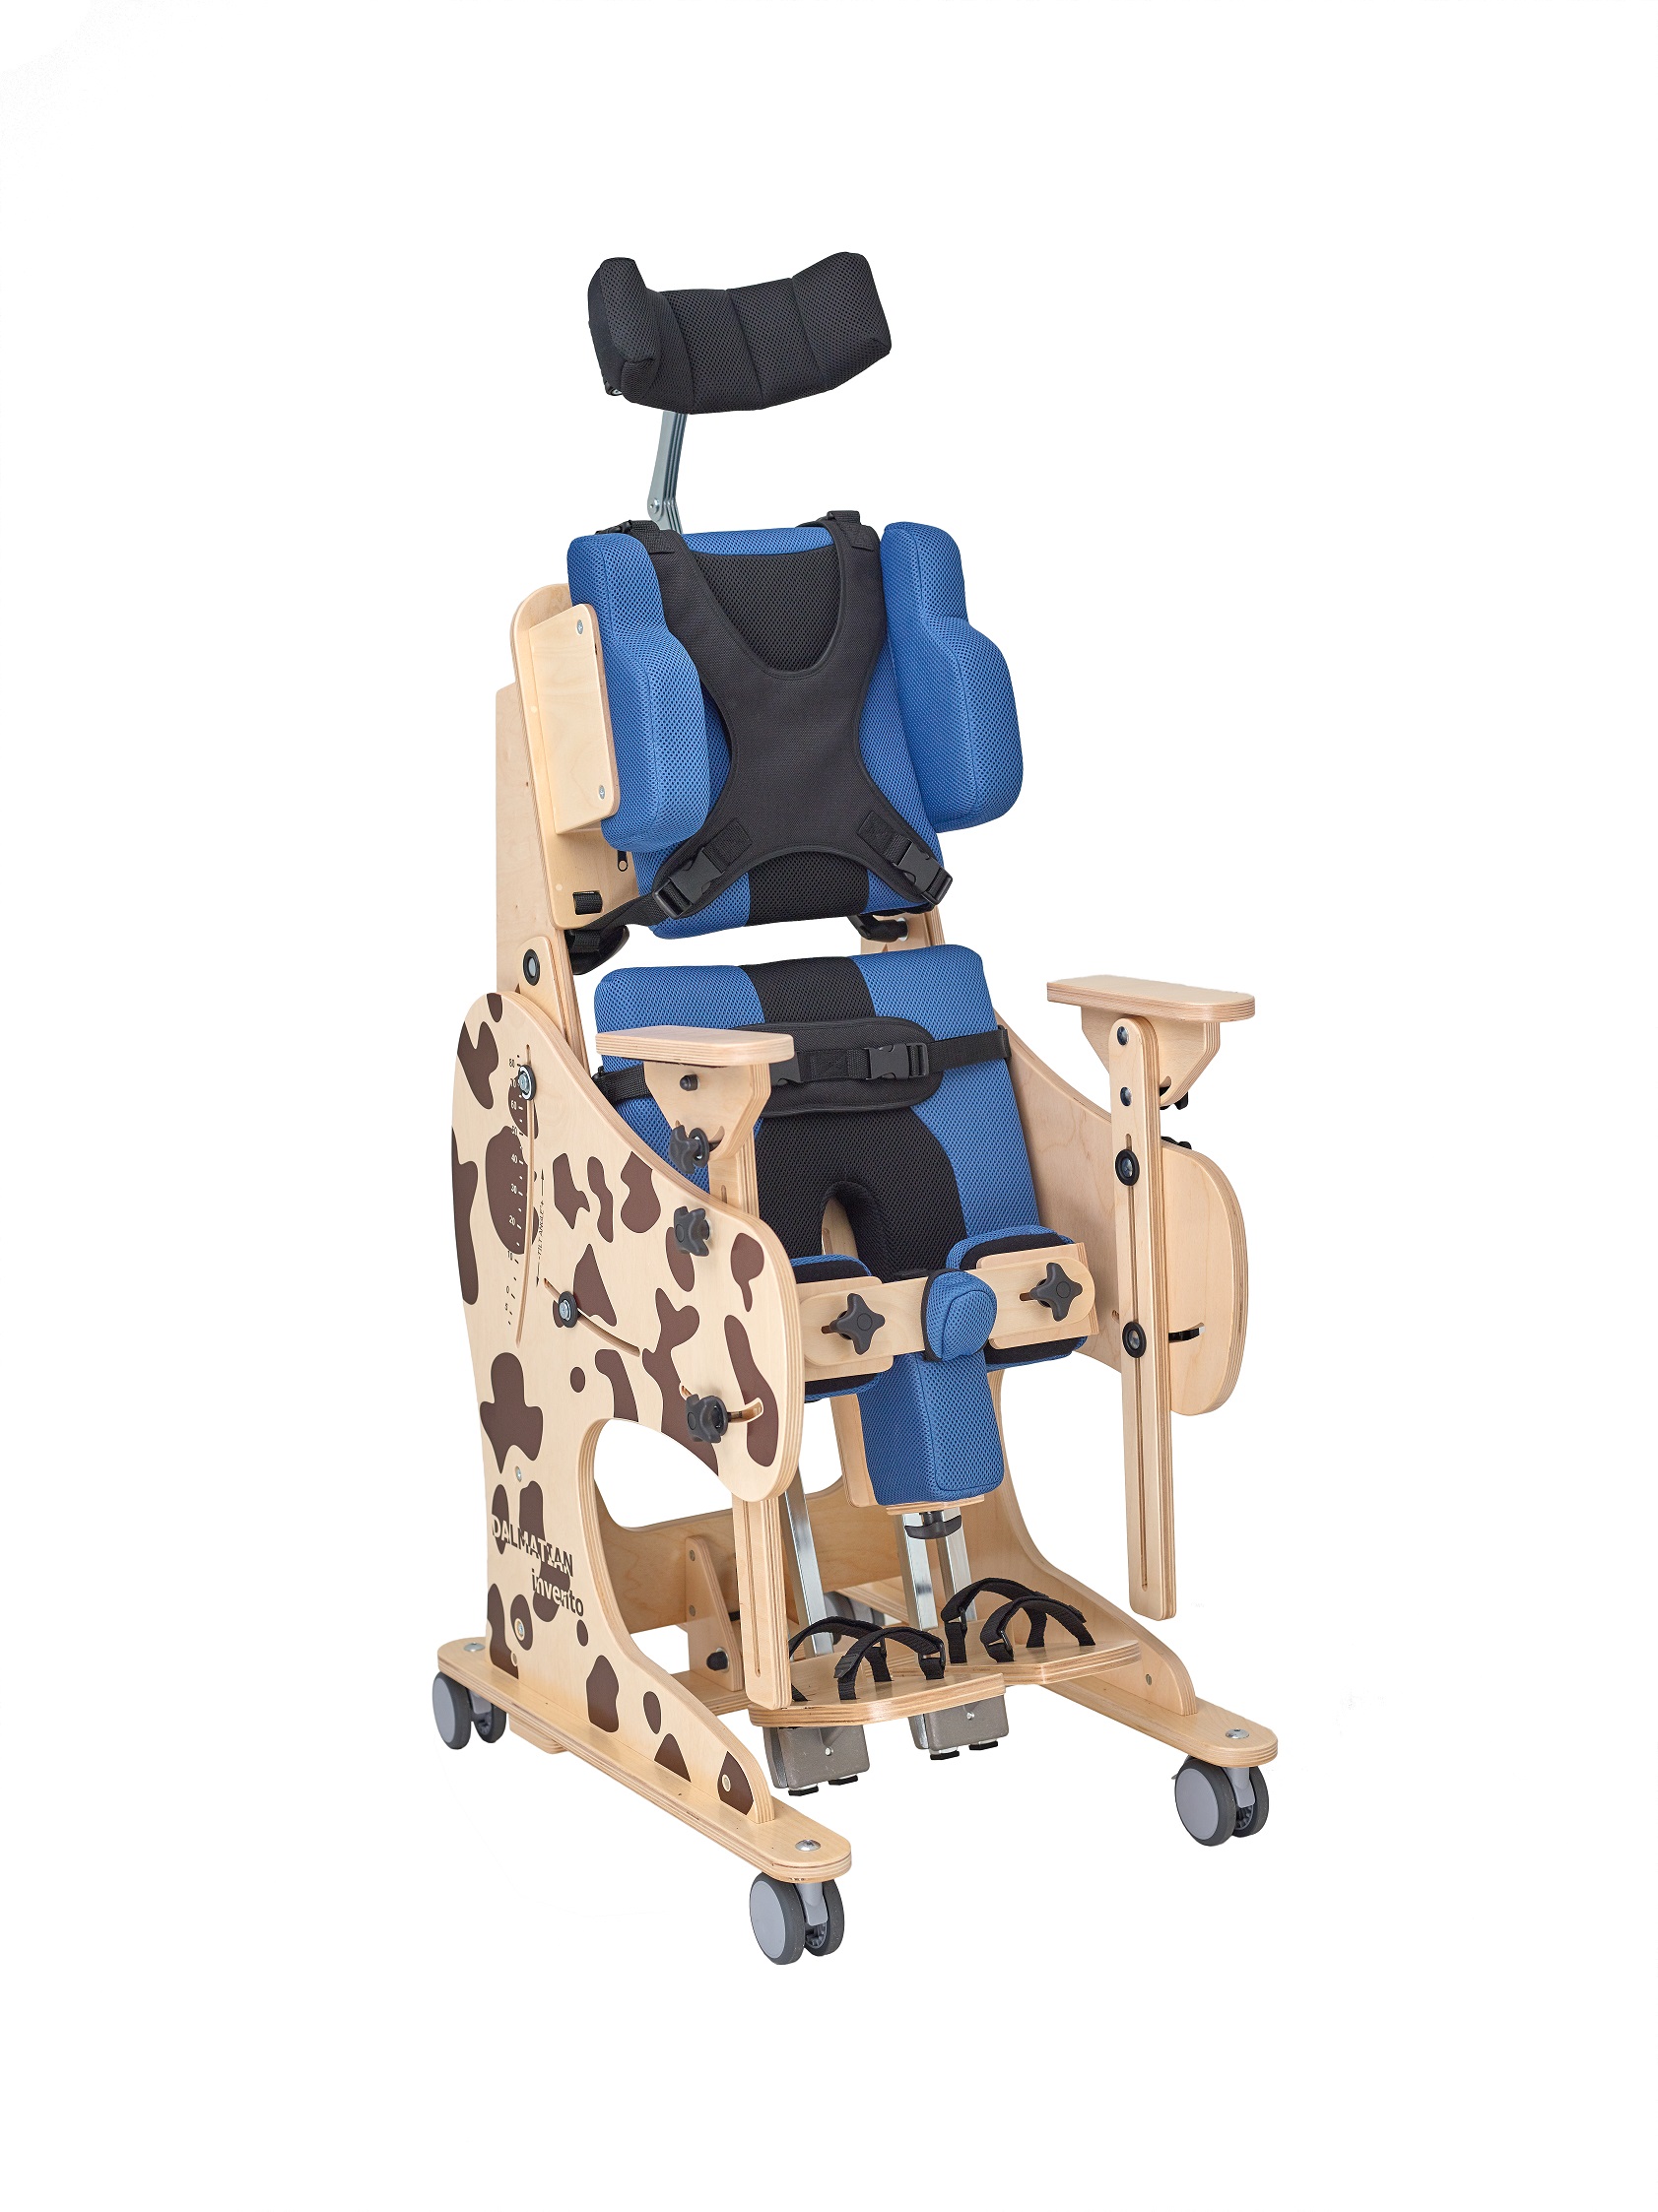 Сиденье для дцп. Опора вертикализатор для детей с ДЦП. Реабилитационное кресло AKCESMED Зебра Инвенто. Вертикализатор для инвалидов детей ДЦП. Вертикализатор Далматинчик.